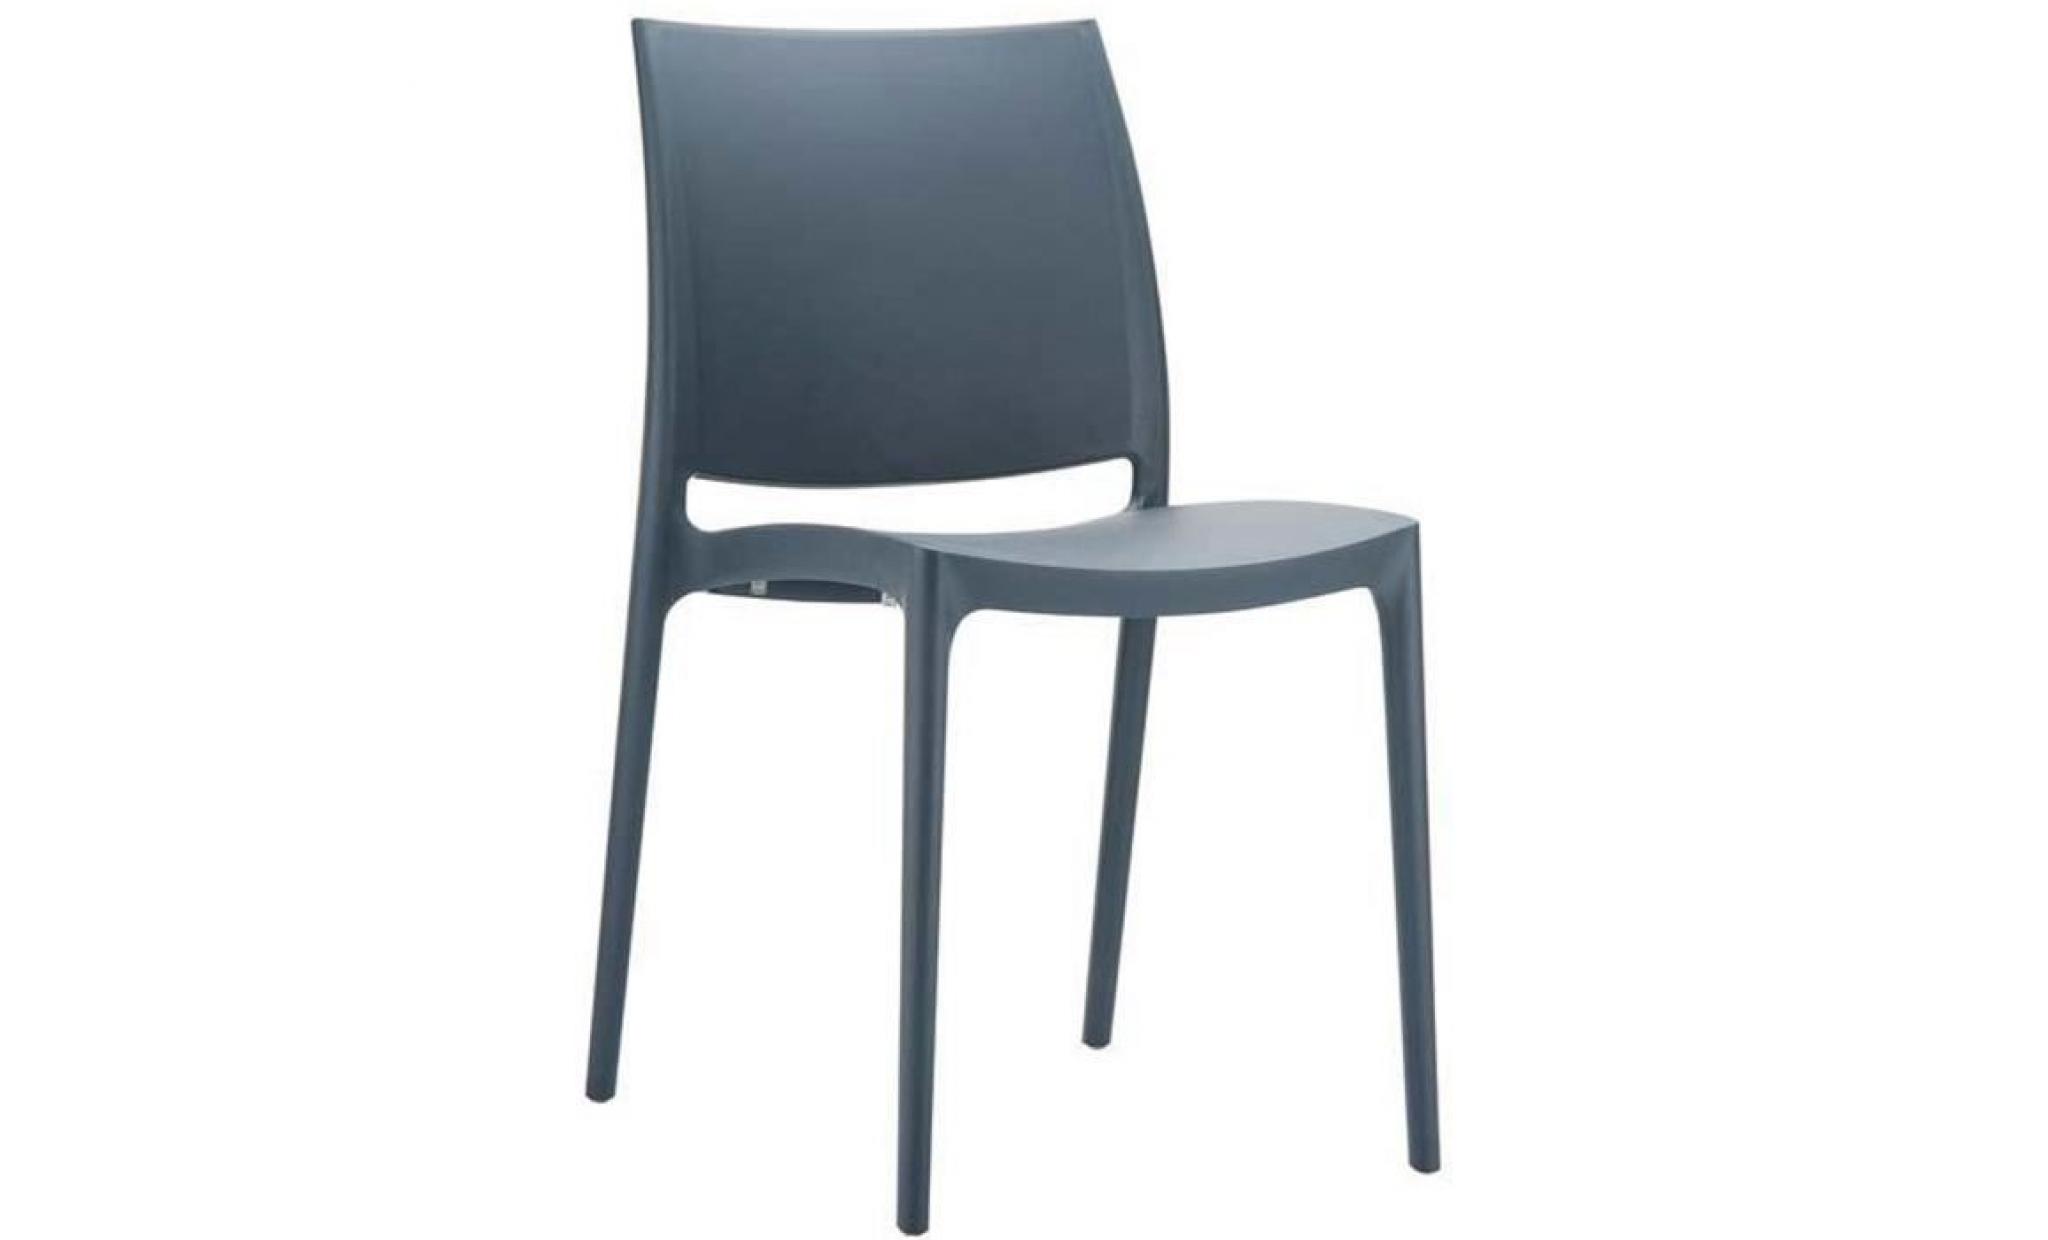 Chaise de jardin empilable en plastique gris foncé, Dim : H81 x P50 x L44 cm